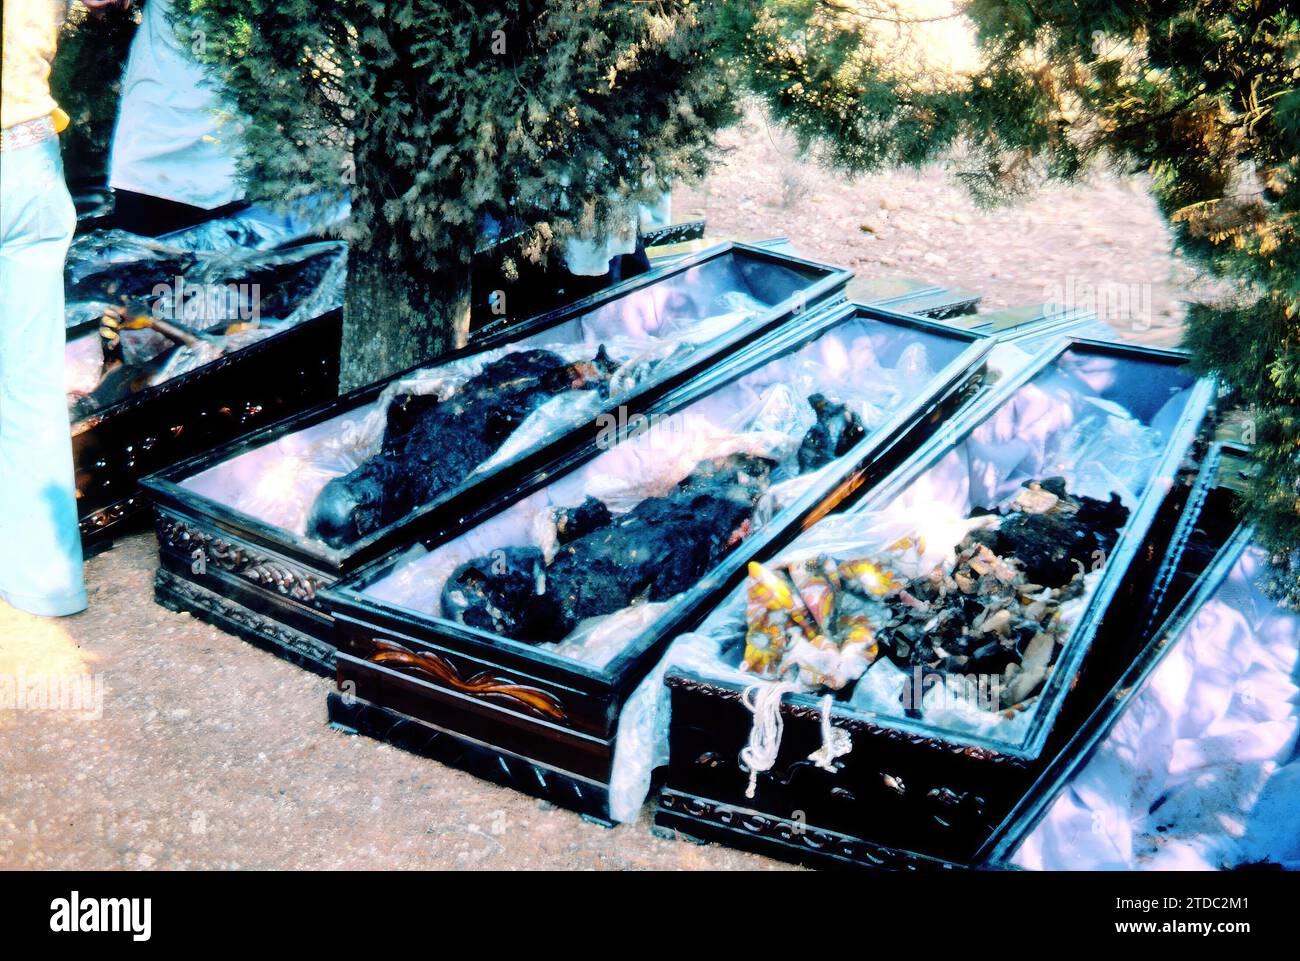 07/10/1978. Explosion eines Tankwagens, der Propylen vor dem Campingplatz „los Alfaques“ in San Carlos de la Rapita (Tarragona) transportiert. Im Bild die Särge von mehreren Opfern. Quelle: Album/Archivo ABC Stockfoto